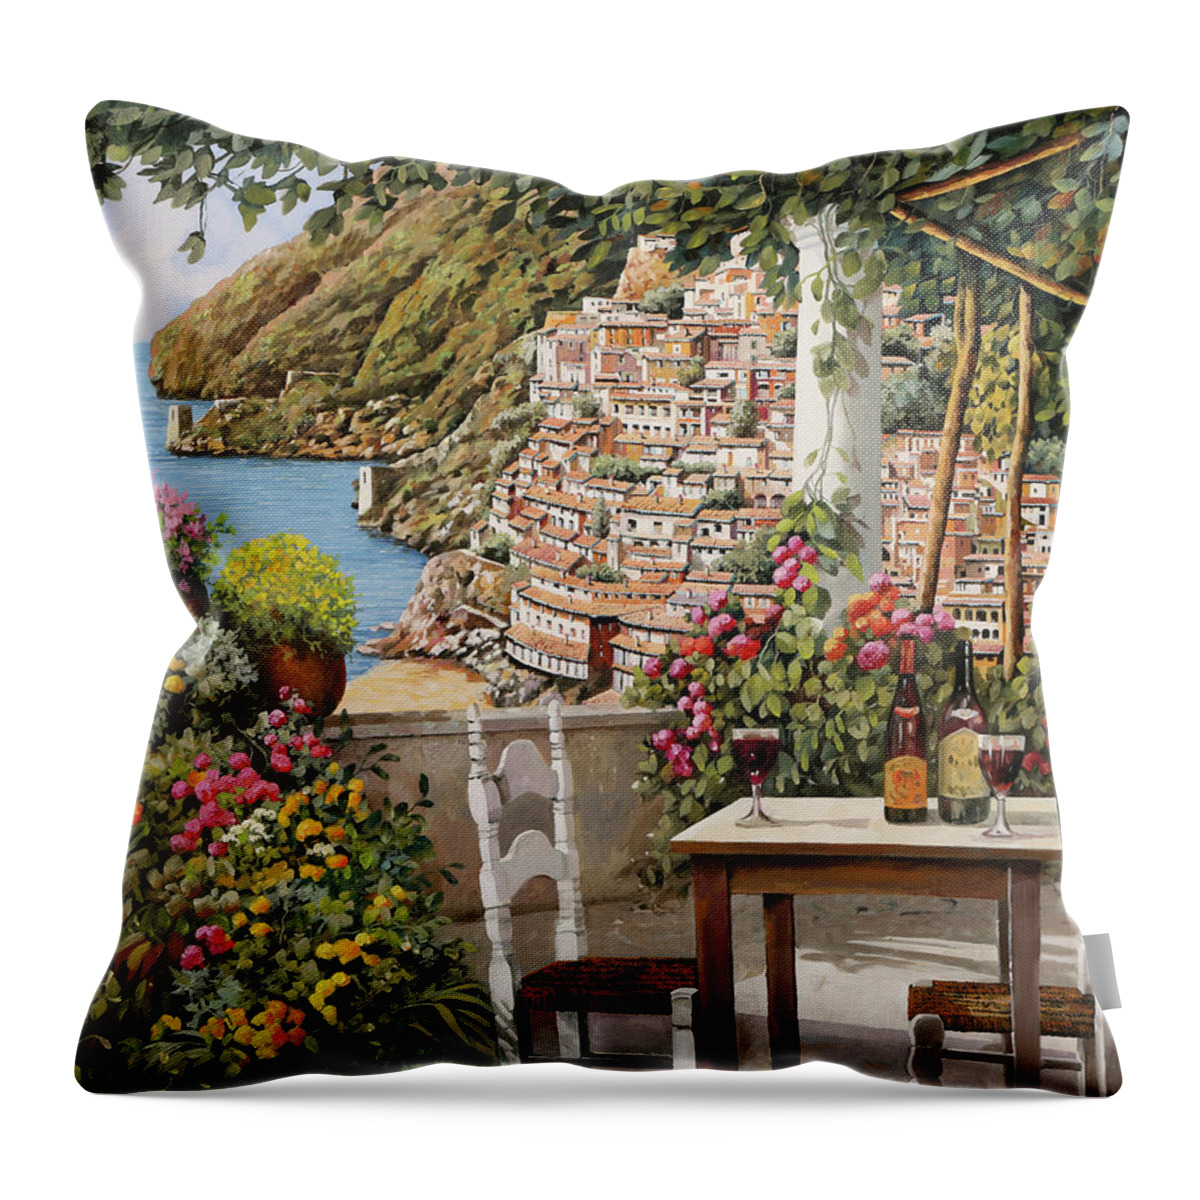 Positano Throw Pillow featuring the painting aperitivo sulla terrazza di Positano by Guido Borelli